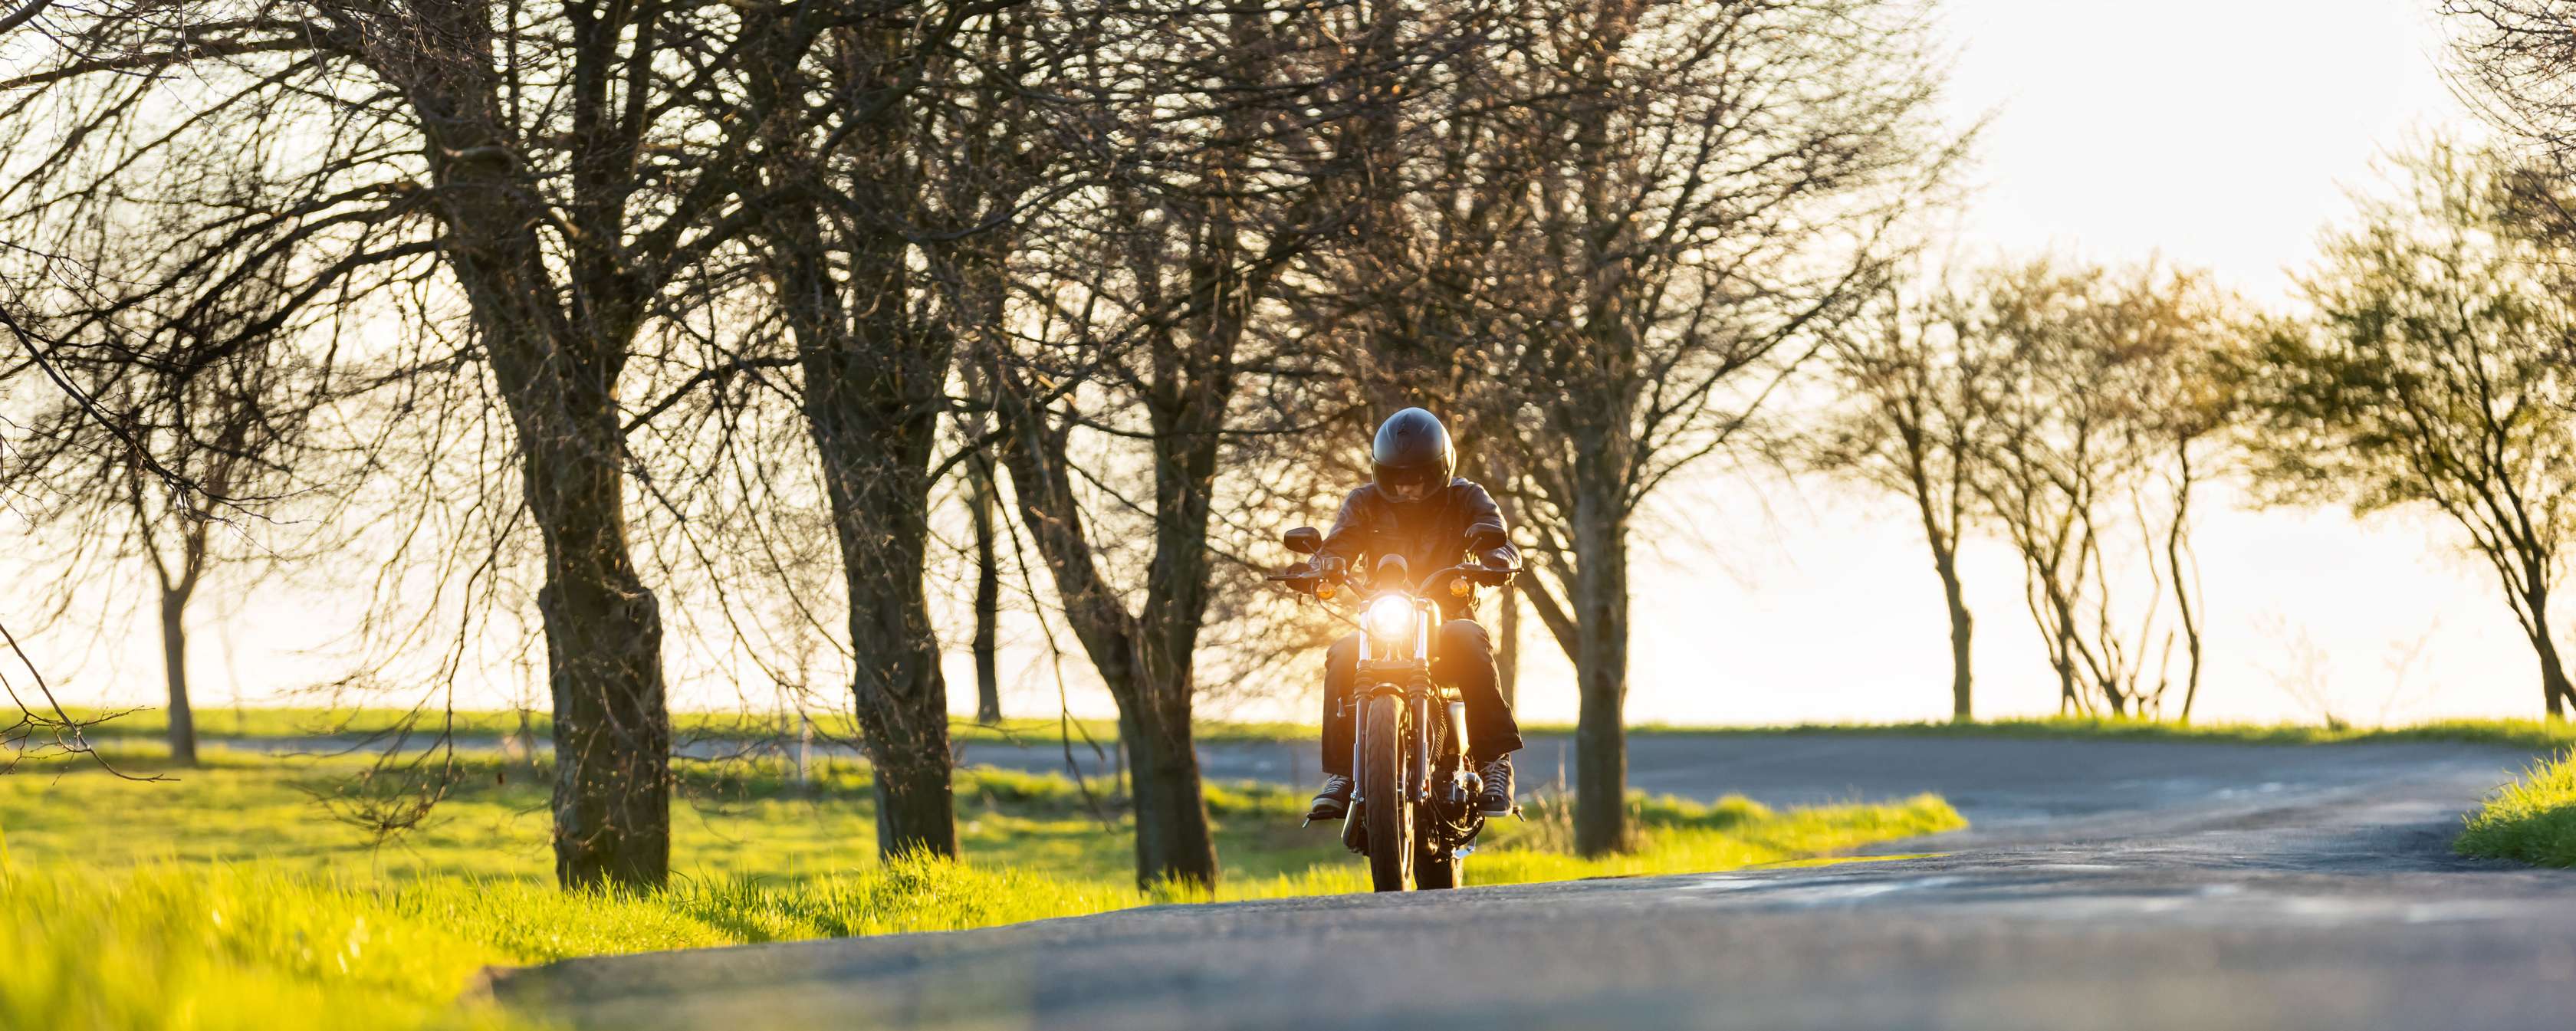 Motorrad Versicherungsklassen: Motorradfahrer mit Helm und schwarzer Schutzkleidung fährt auf Landstraße